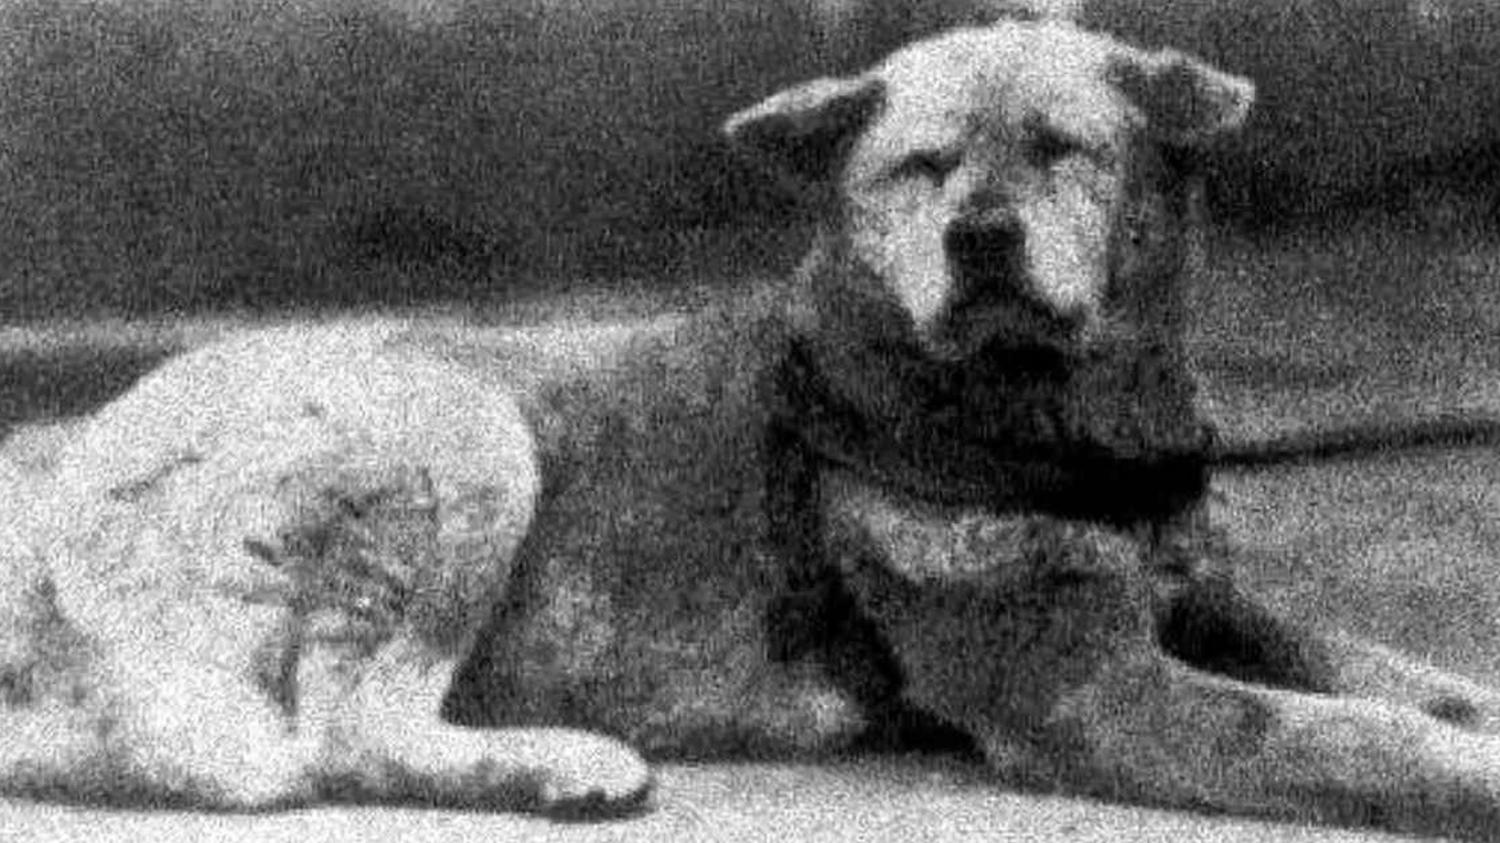 Hồi ức xúc động về chú chó Hachiko dịp kỷ niệm 100 tuổi 